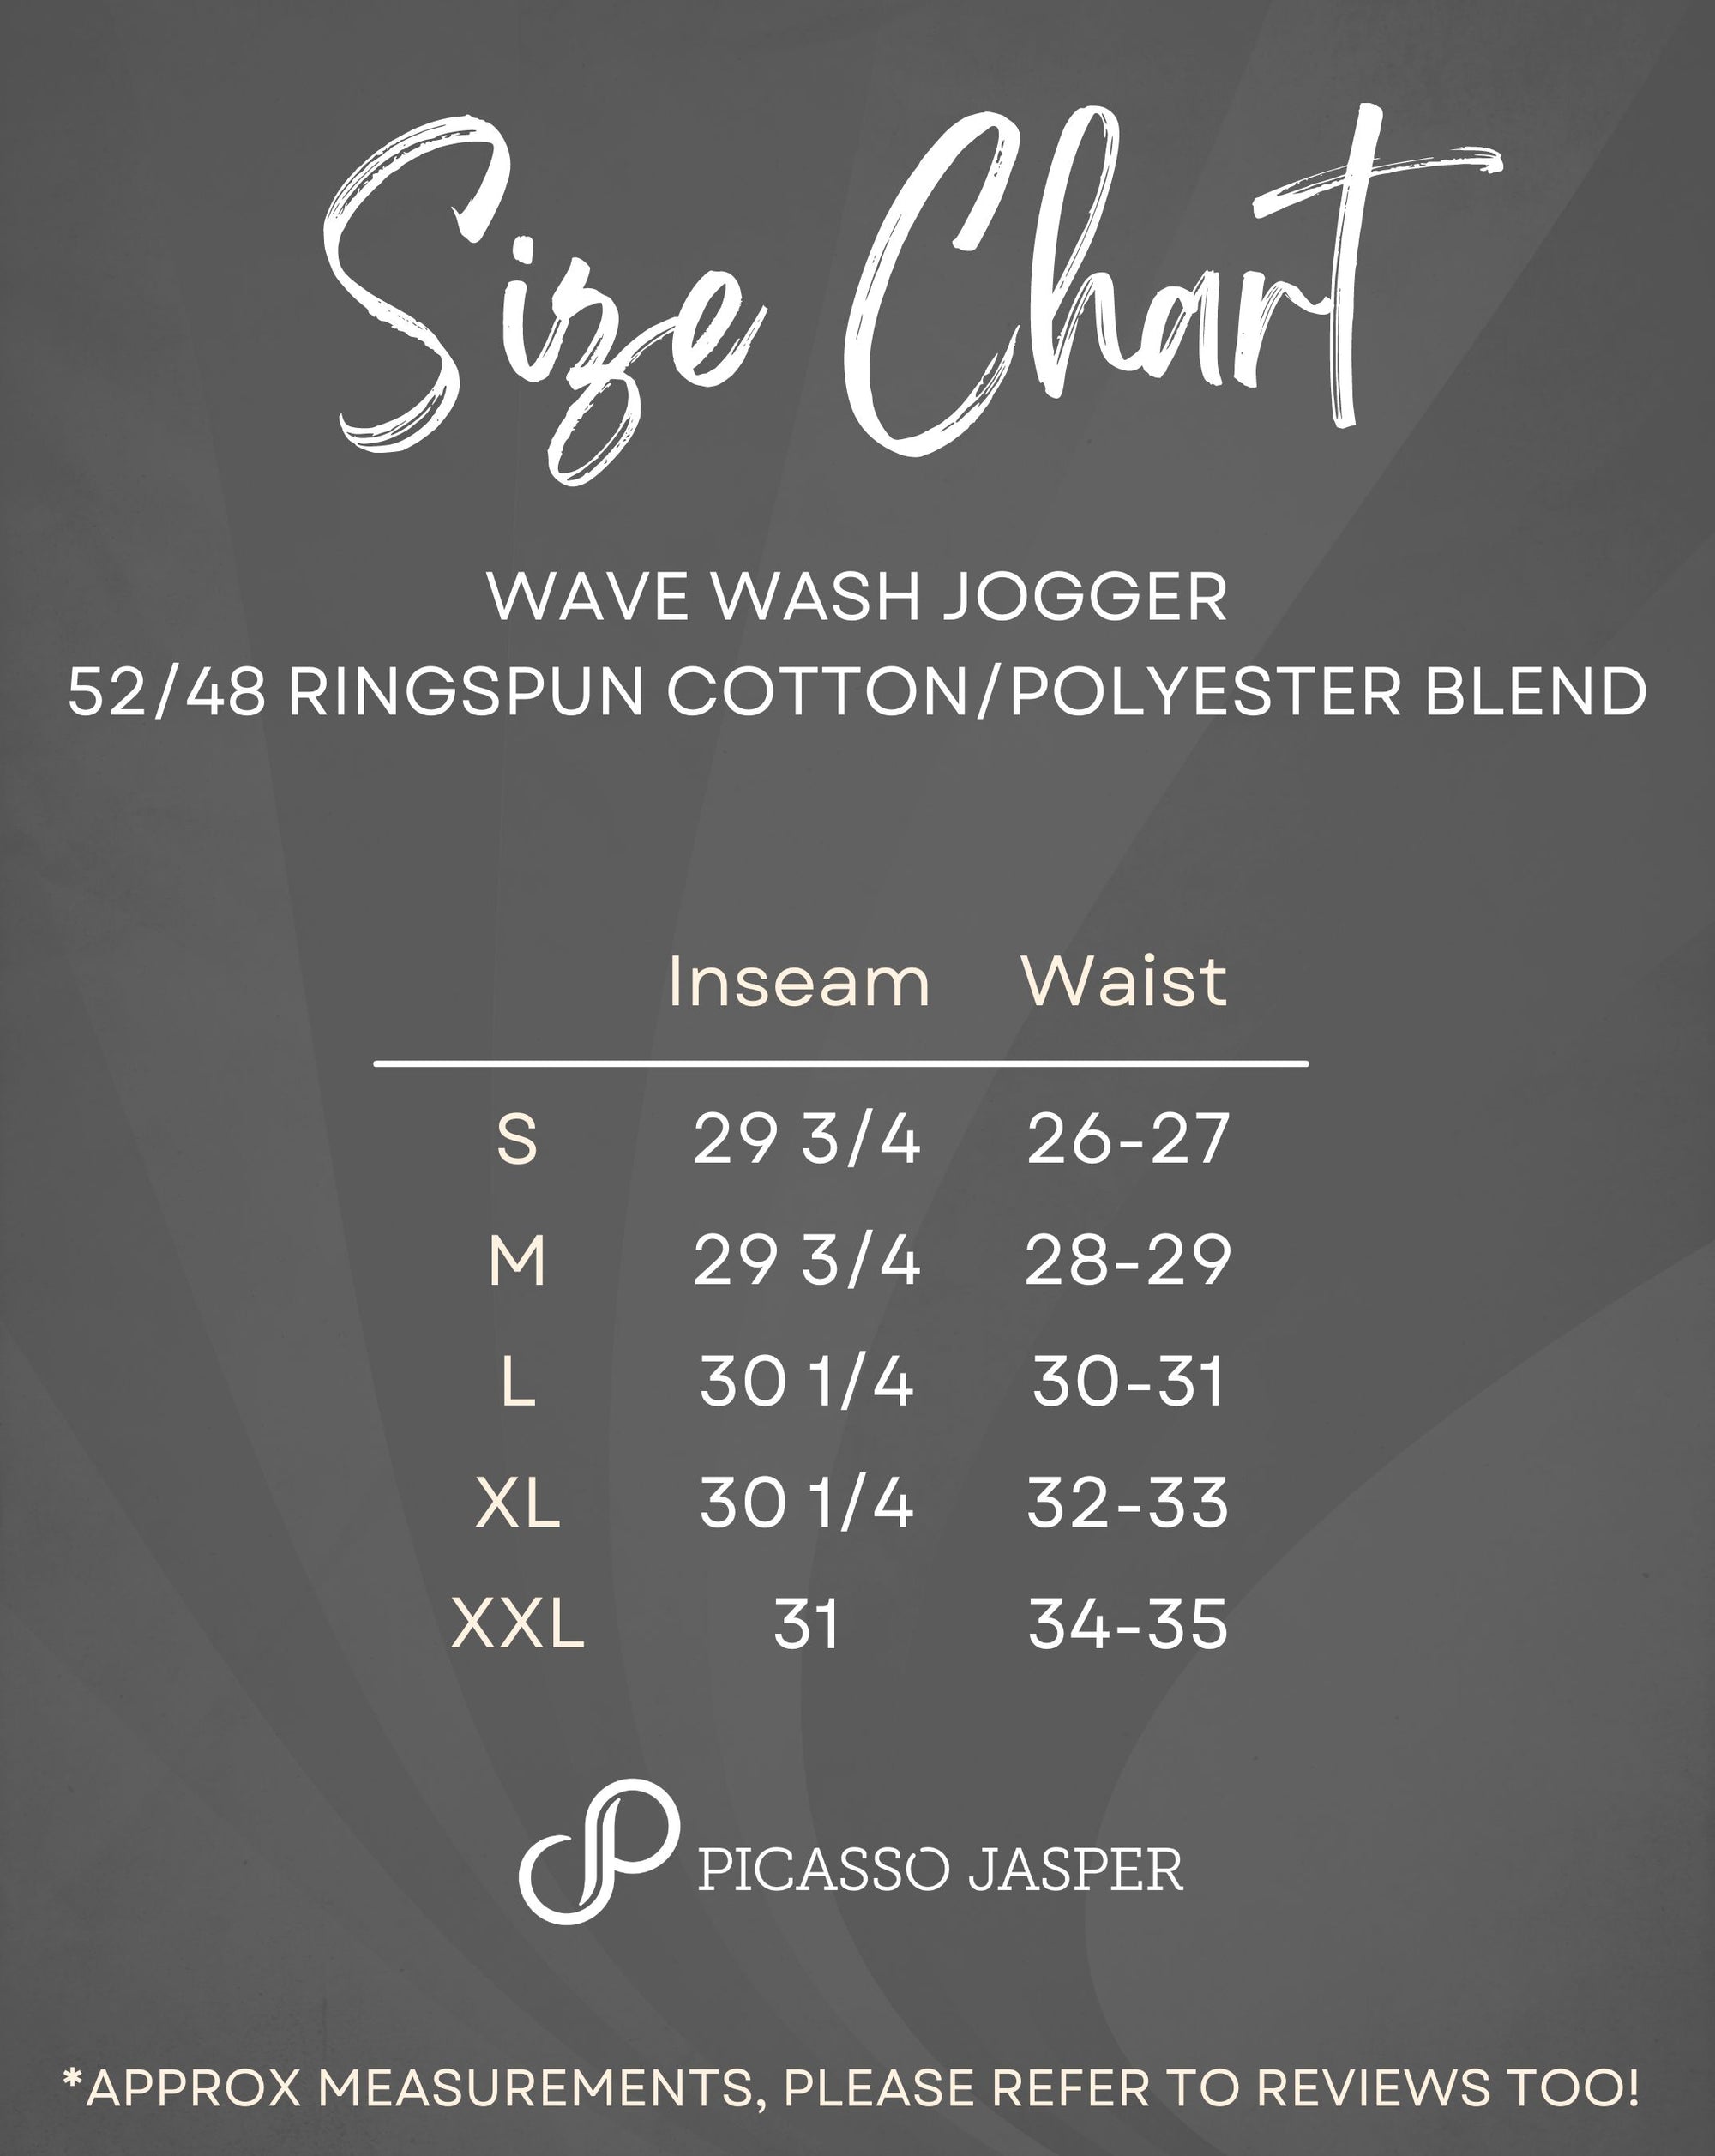 Wave Wash Jogger!